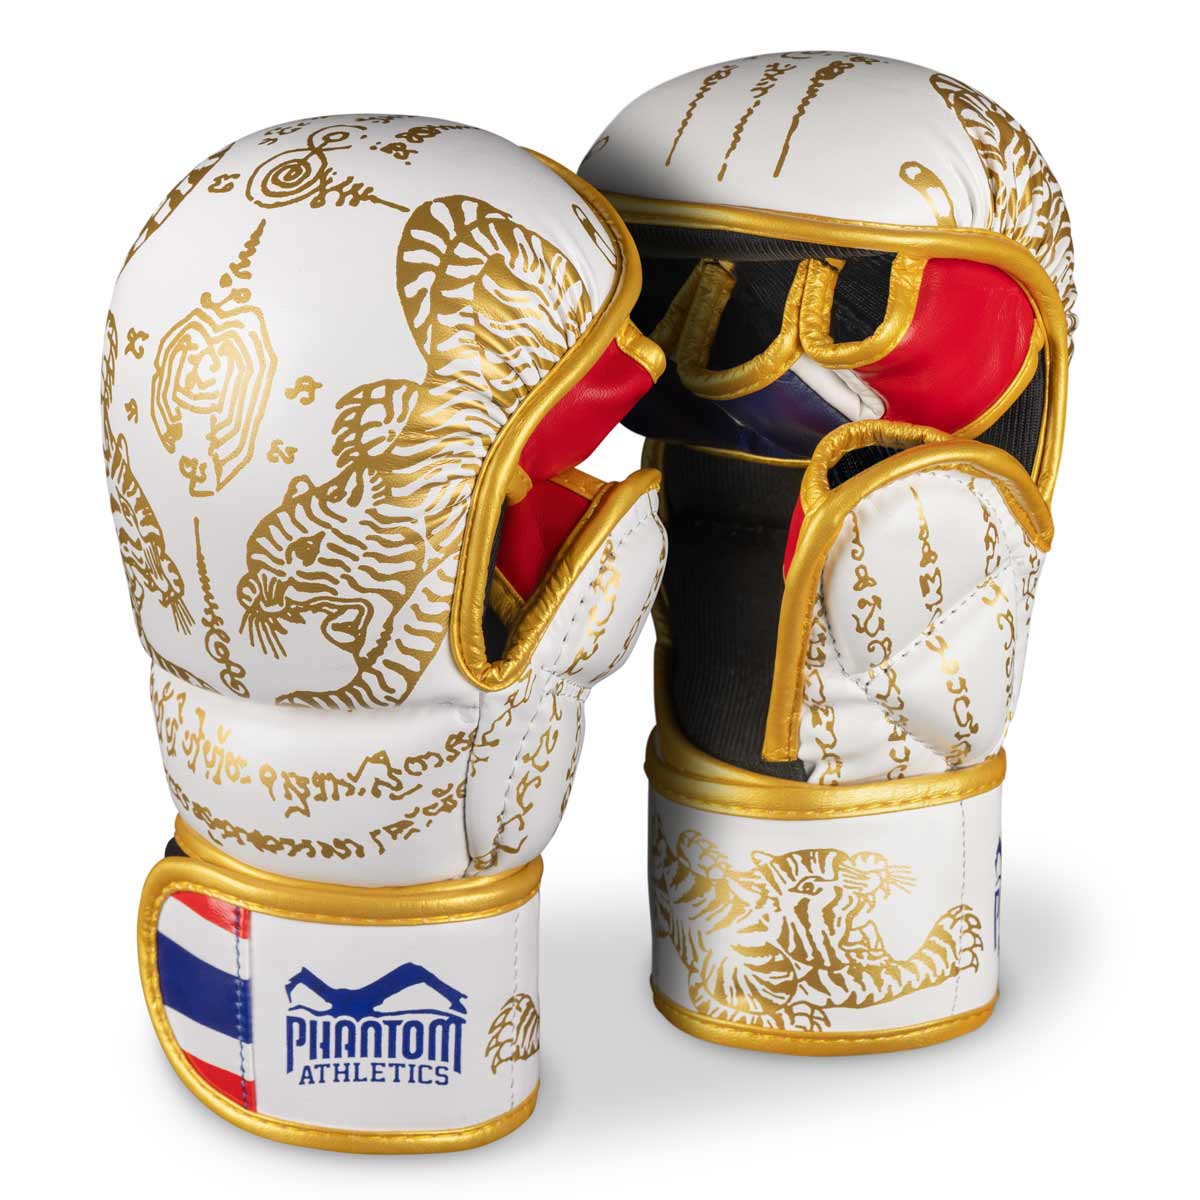 Phantom Muay Thai rukavice za tajlandski boks i MMA sparinge, takmičenja i treninge. U tradicionalnom Sak Yant dizajnu i bijeloj/zlatnoj boji.